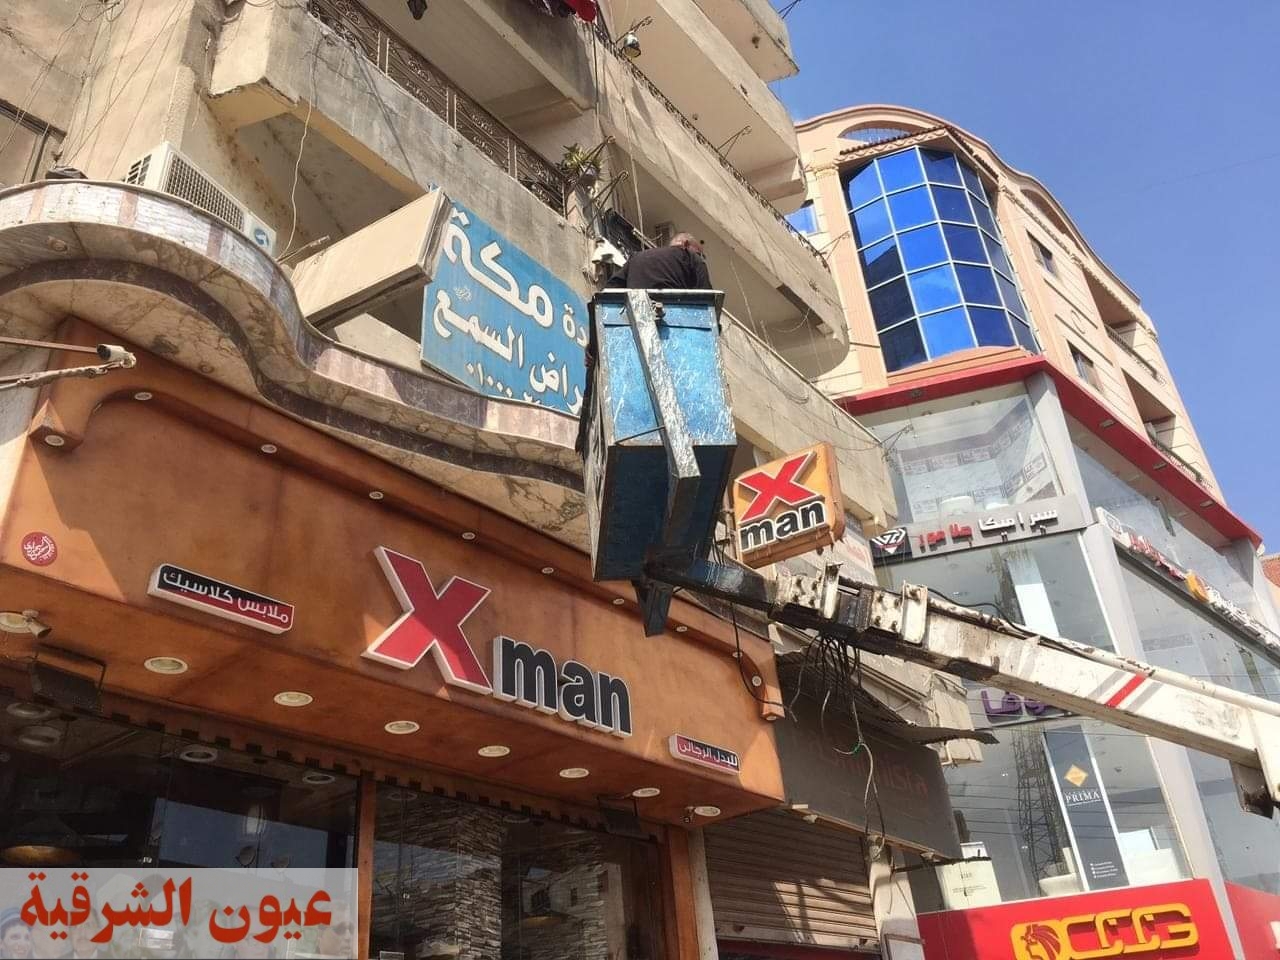 رفع الافتتات الإعلانية الغير مرخصه بشوارع مدينة ابوحماد